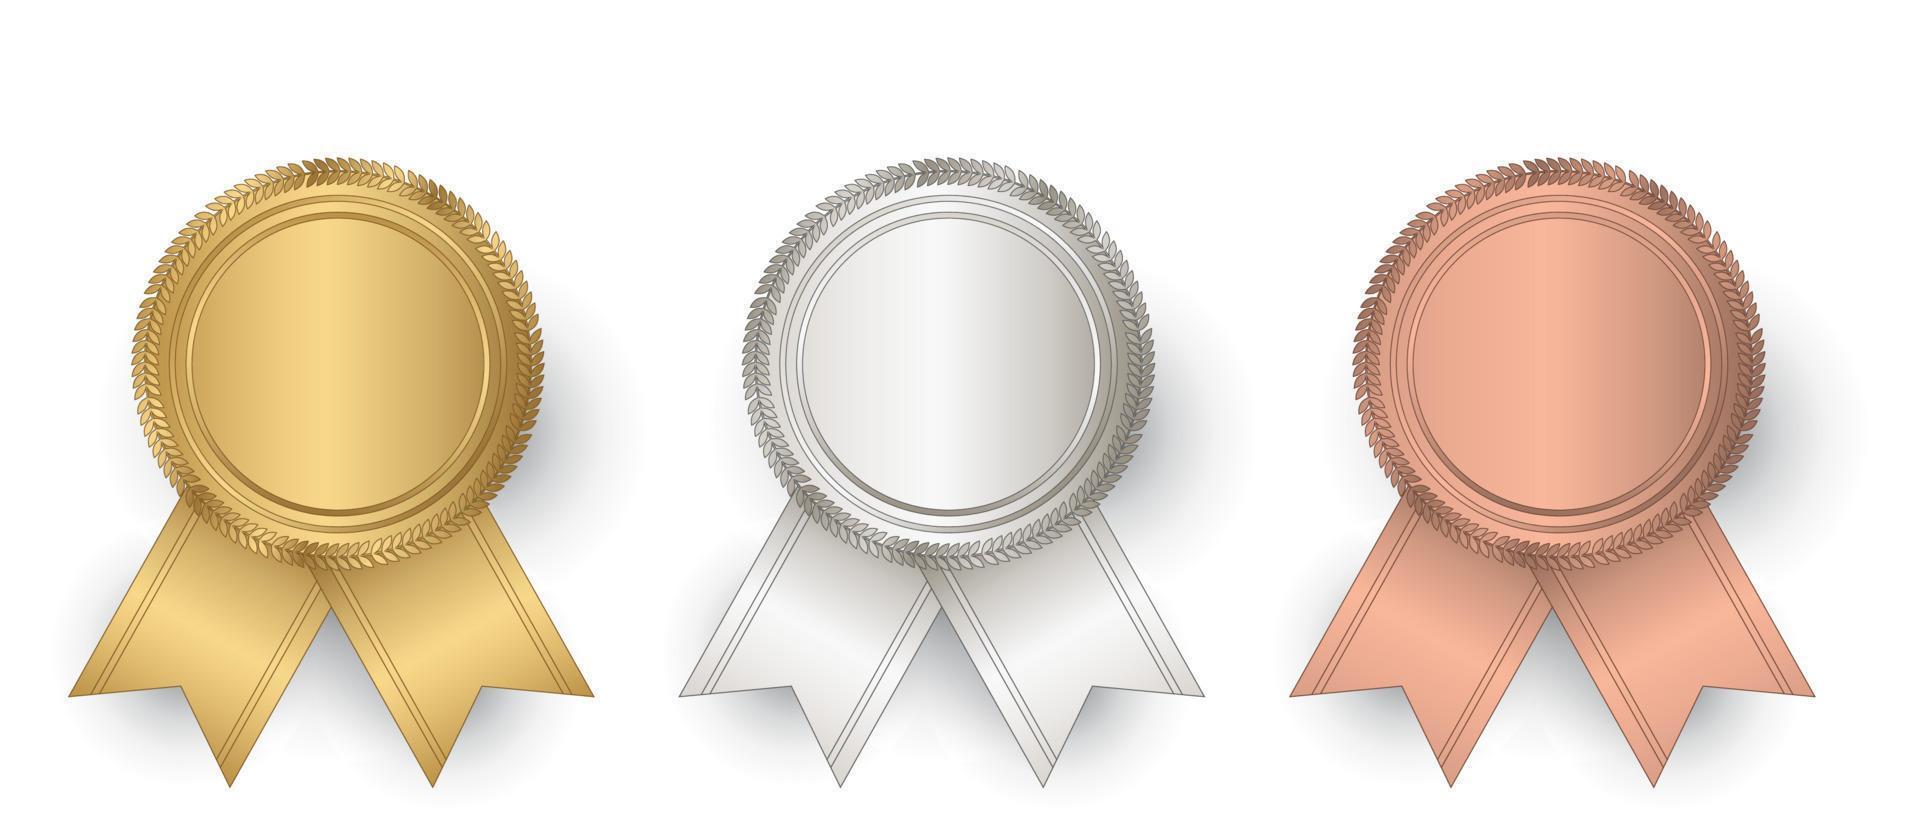 sceau d'or, d'argent et de bronze de vecteur avec des rubans. sceau de luxe. sceau blanc d'or, d'argent et de bronze. illustration vectorielle